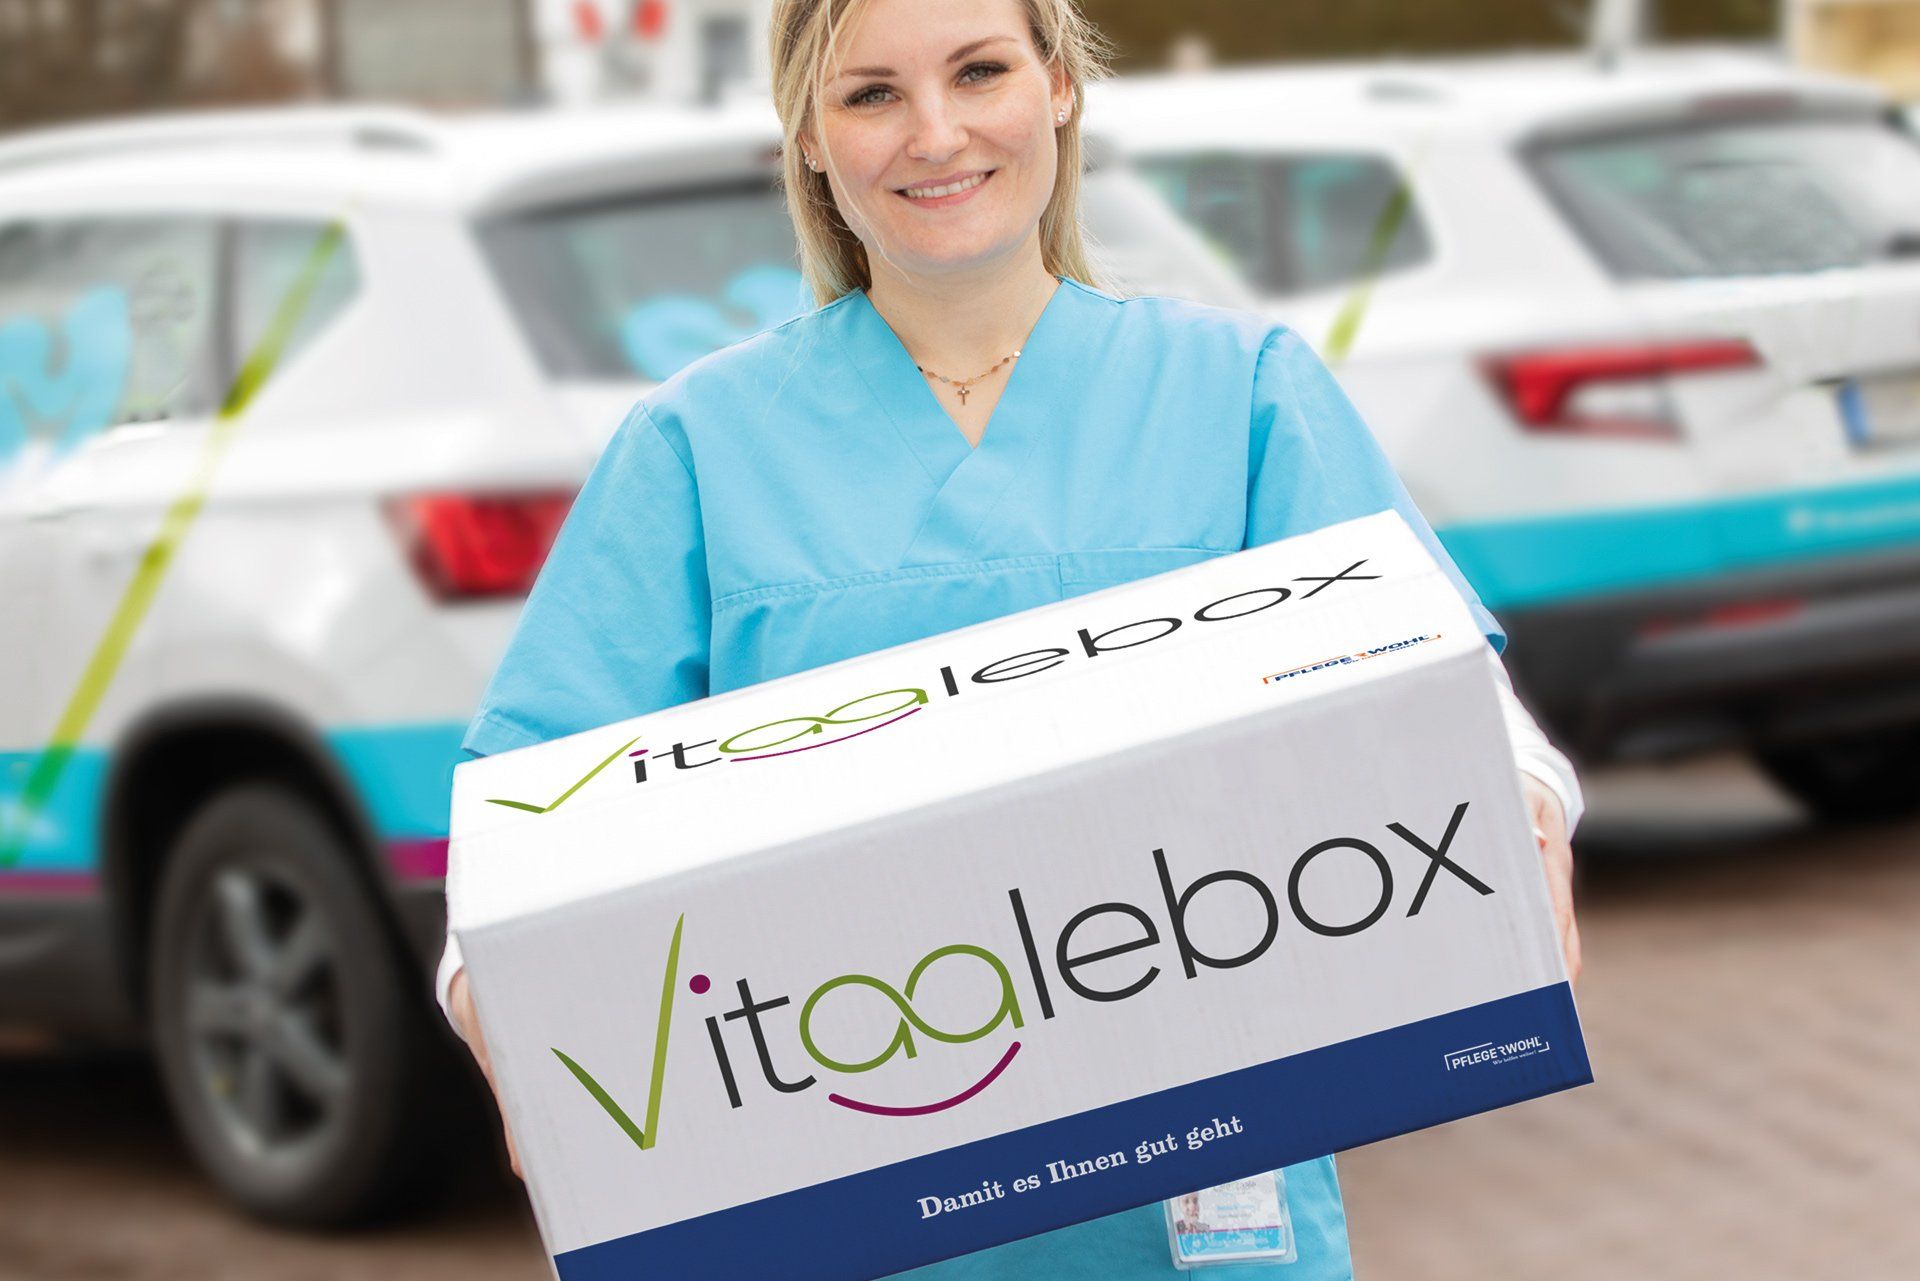 PFLEGERWOHL Über uns Eine Pflegekraft trägt eine Vitaalebox mit Pflegehilfsmitteln